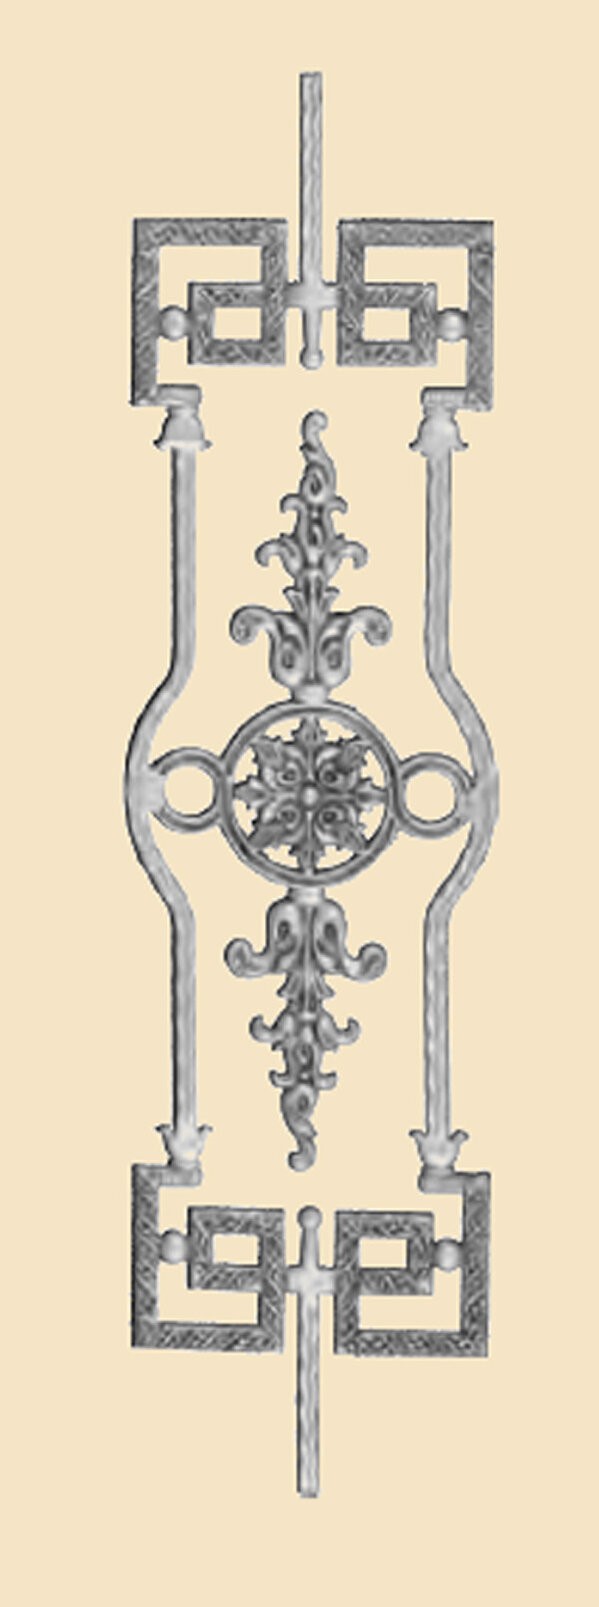 objet de decoration portails et garde corps 1283-1284